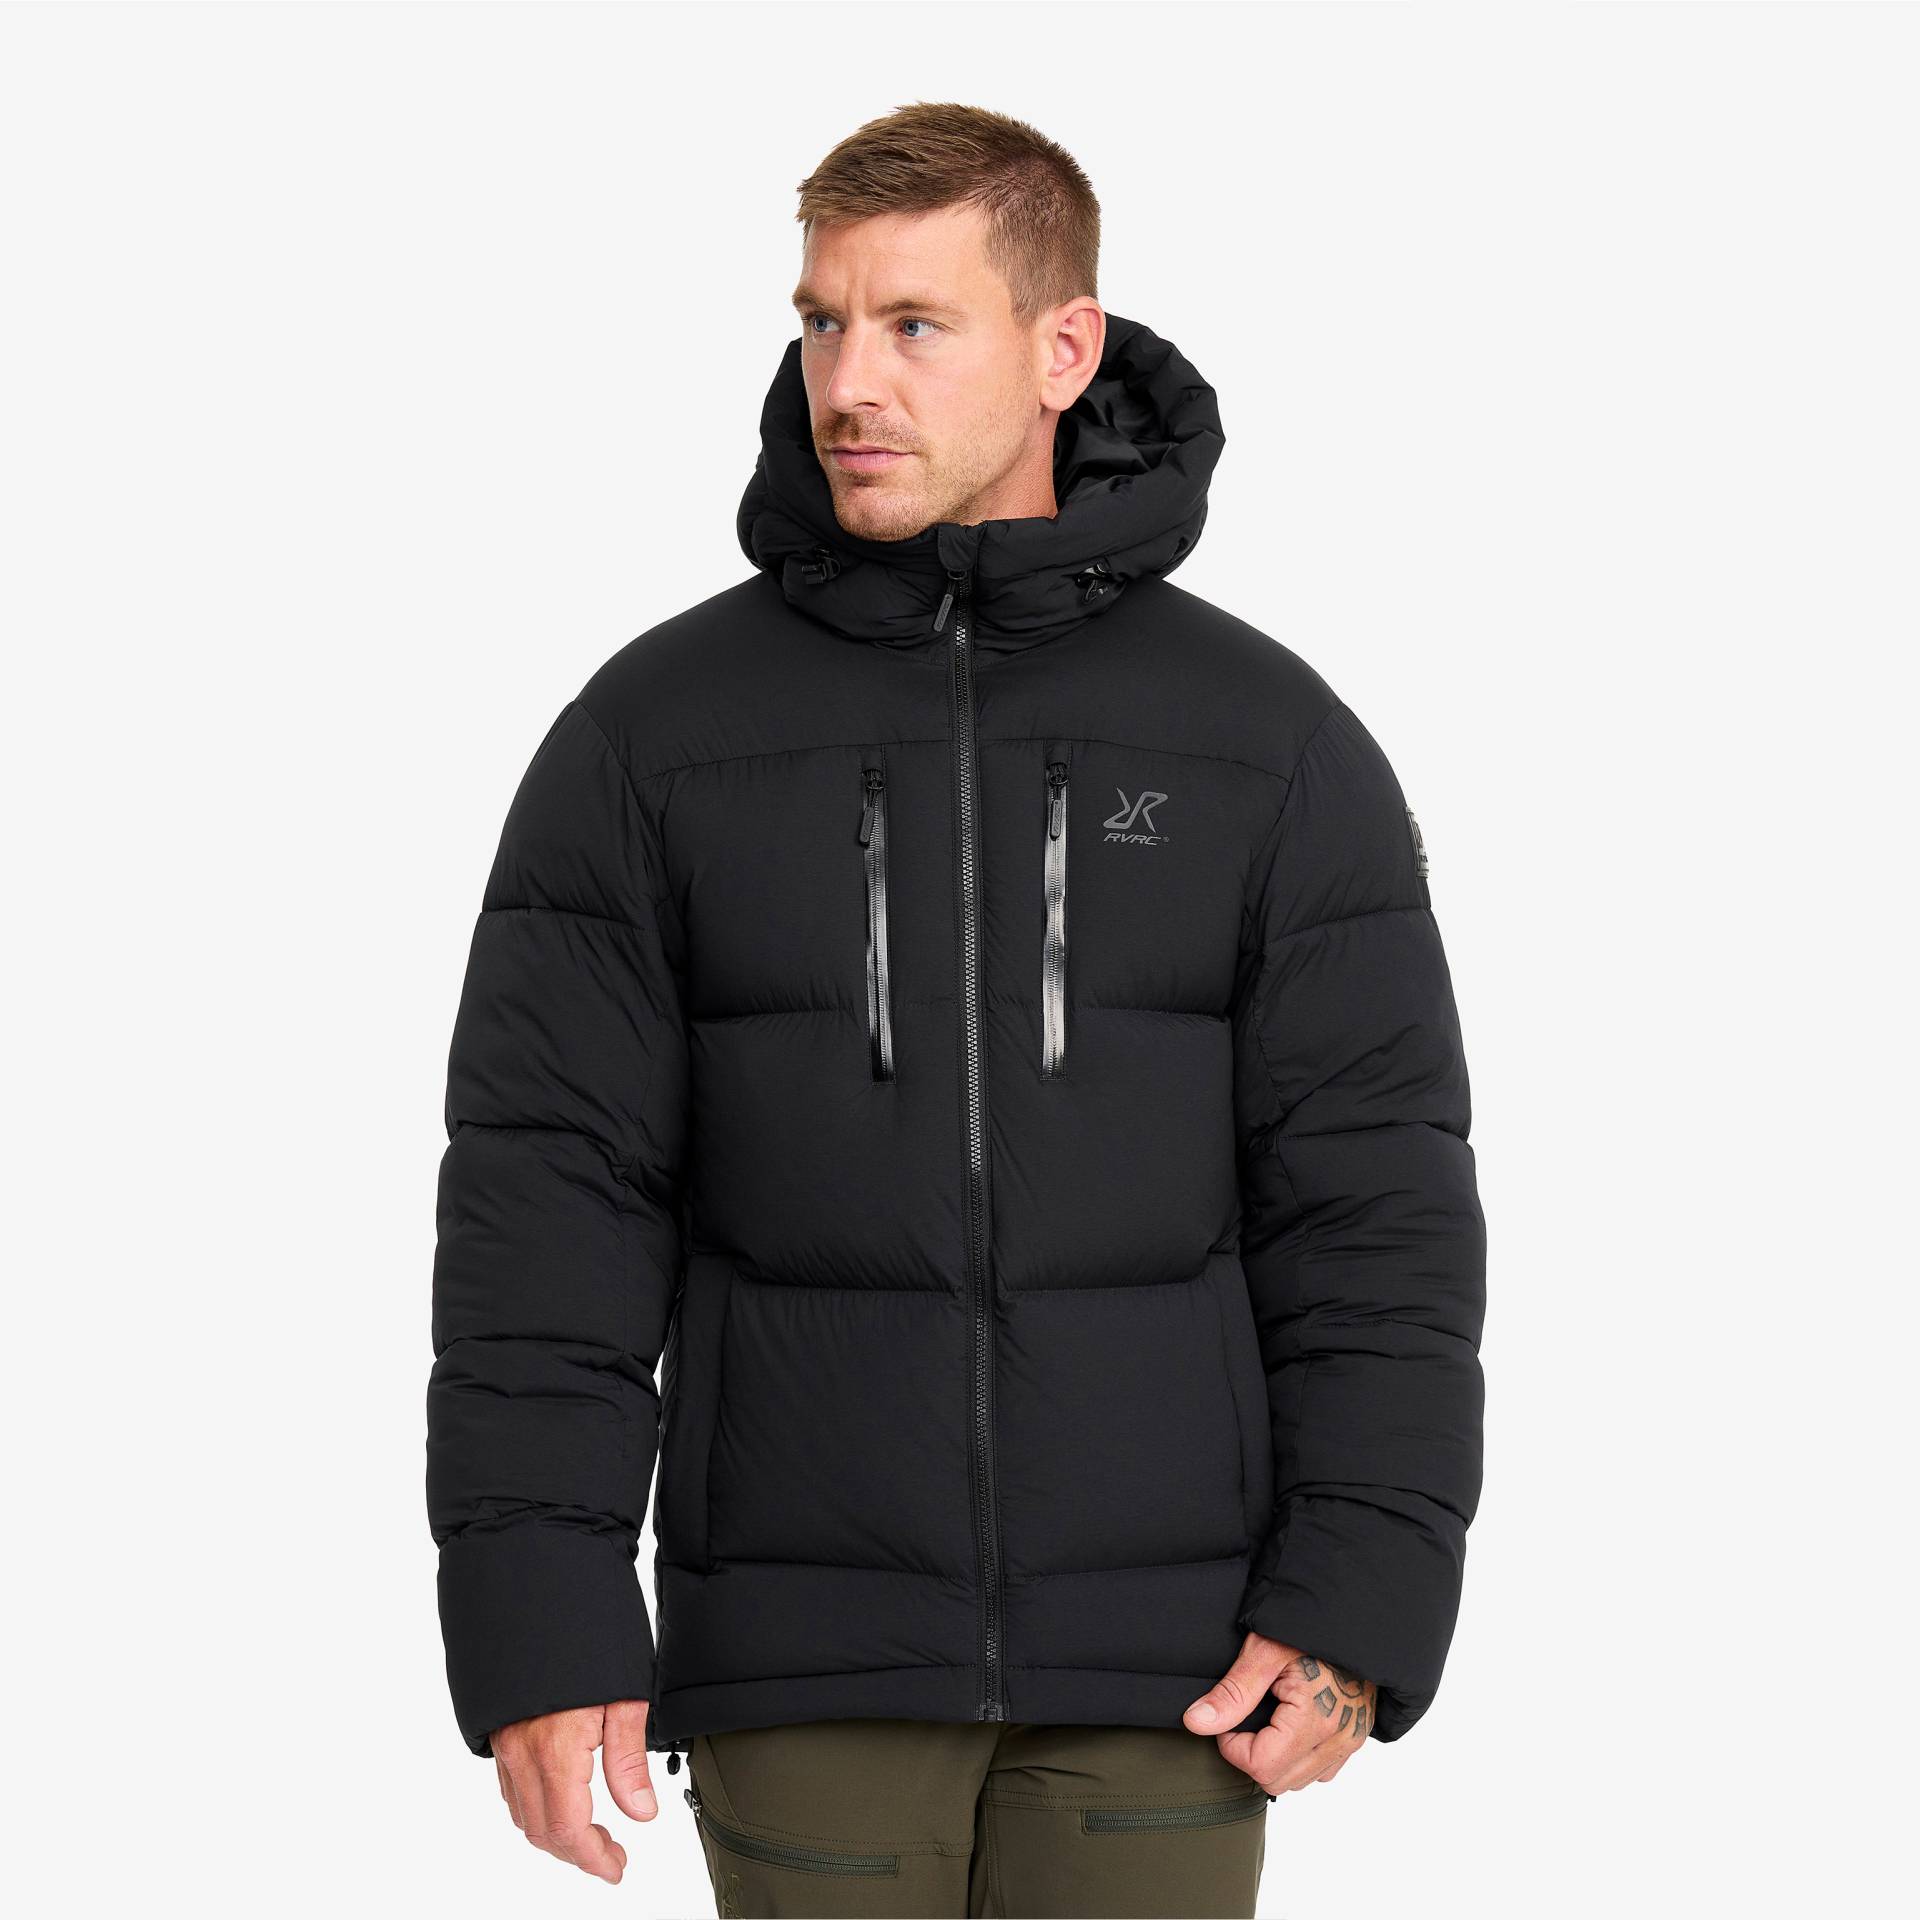 Flexpedition Down Jacket Herren Black, Größe:XS - Winterjacken von RevolutionRace